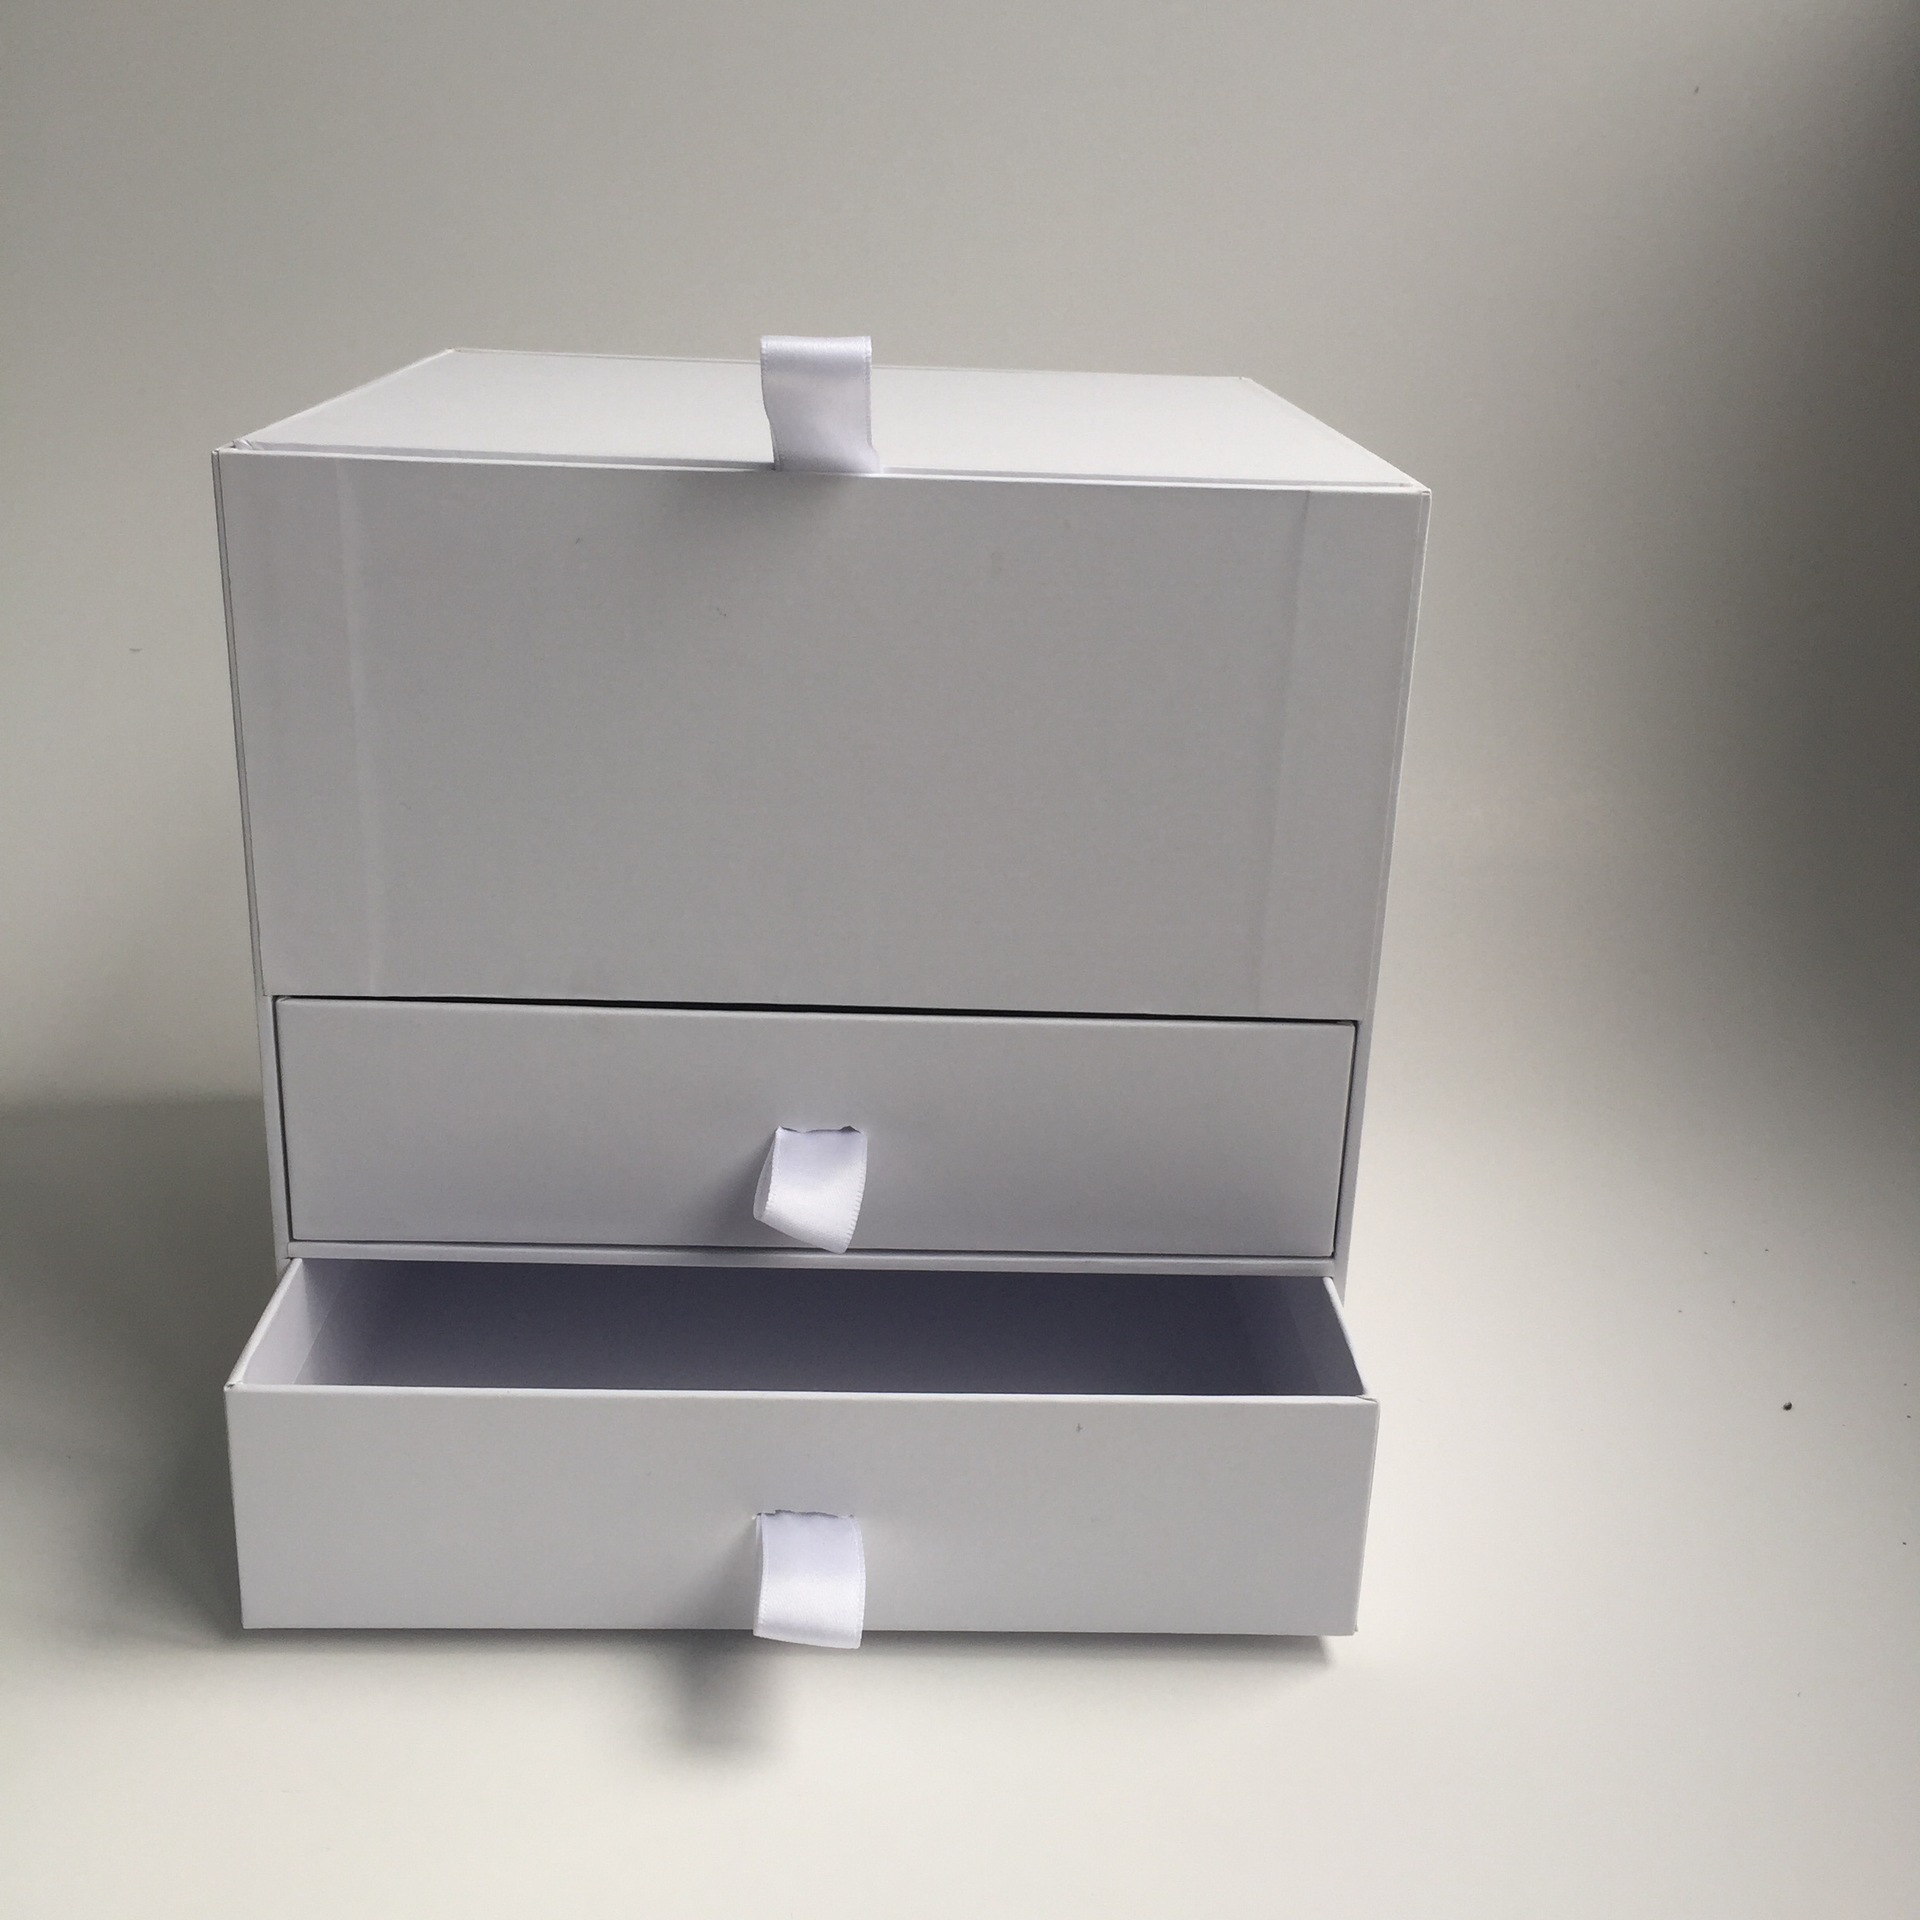 定制多层节日礼盒 创意双层抽屉礼品盒 翻盖抽屉包装纸盒定做